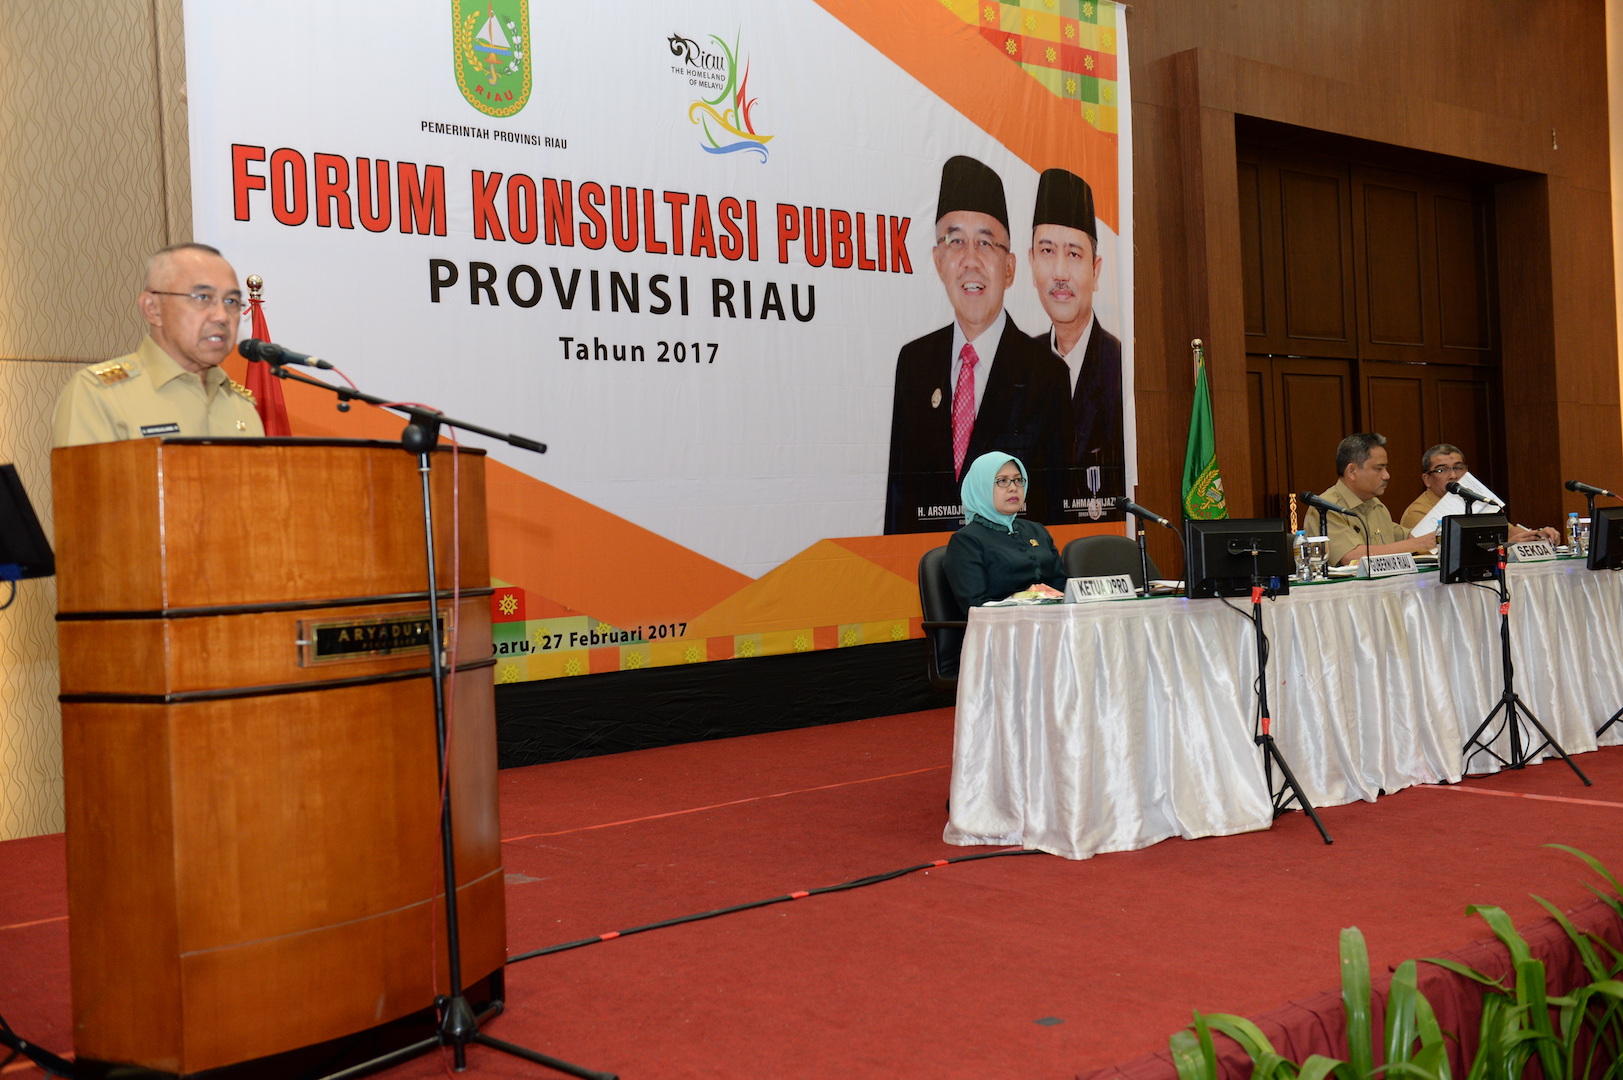 Permalink ke Forum Konsultasi Publik Provinsi Riau Tahun 2017